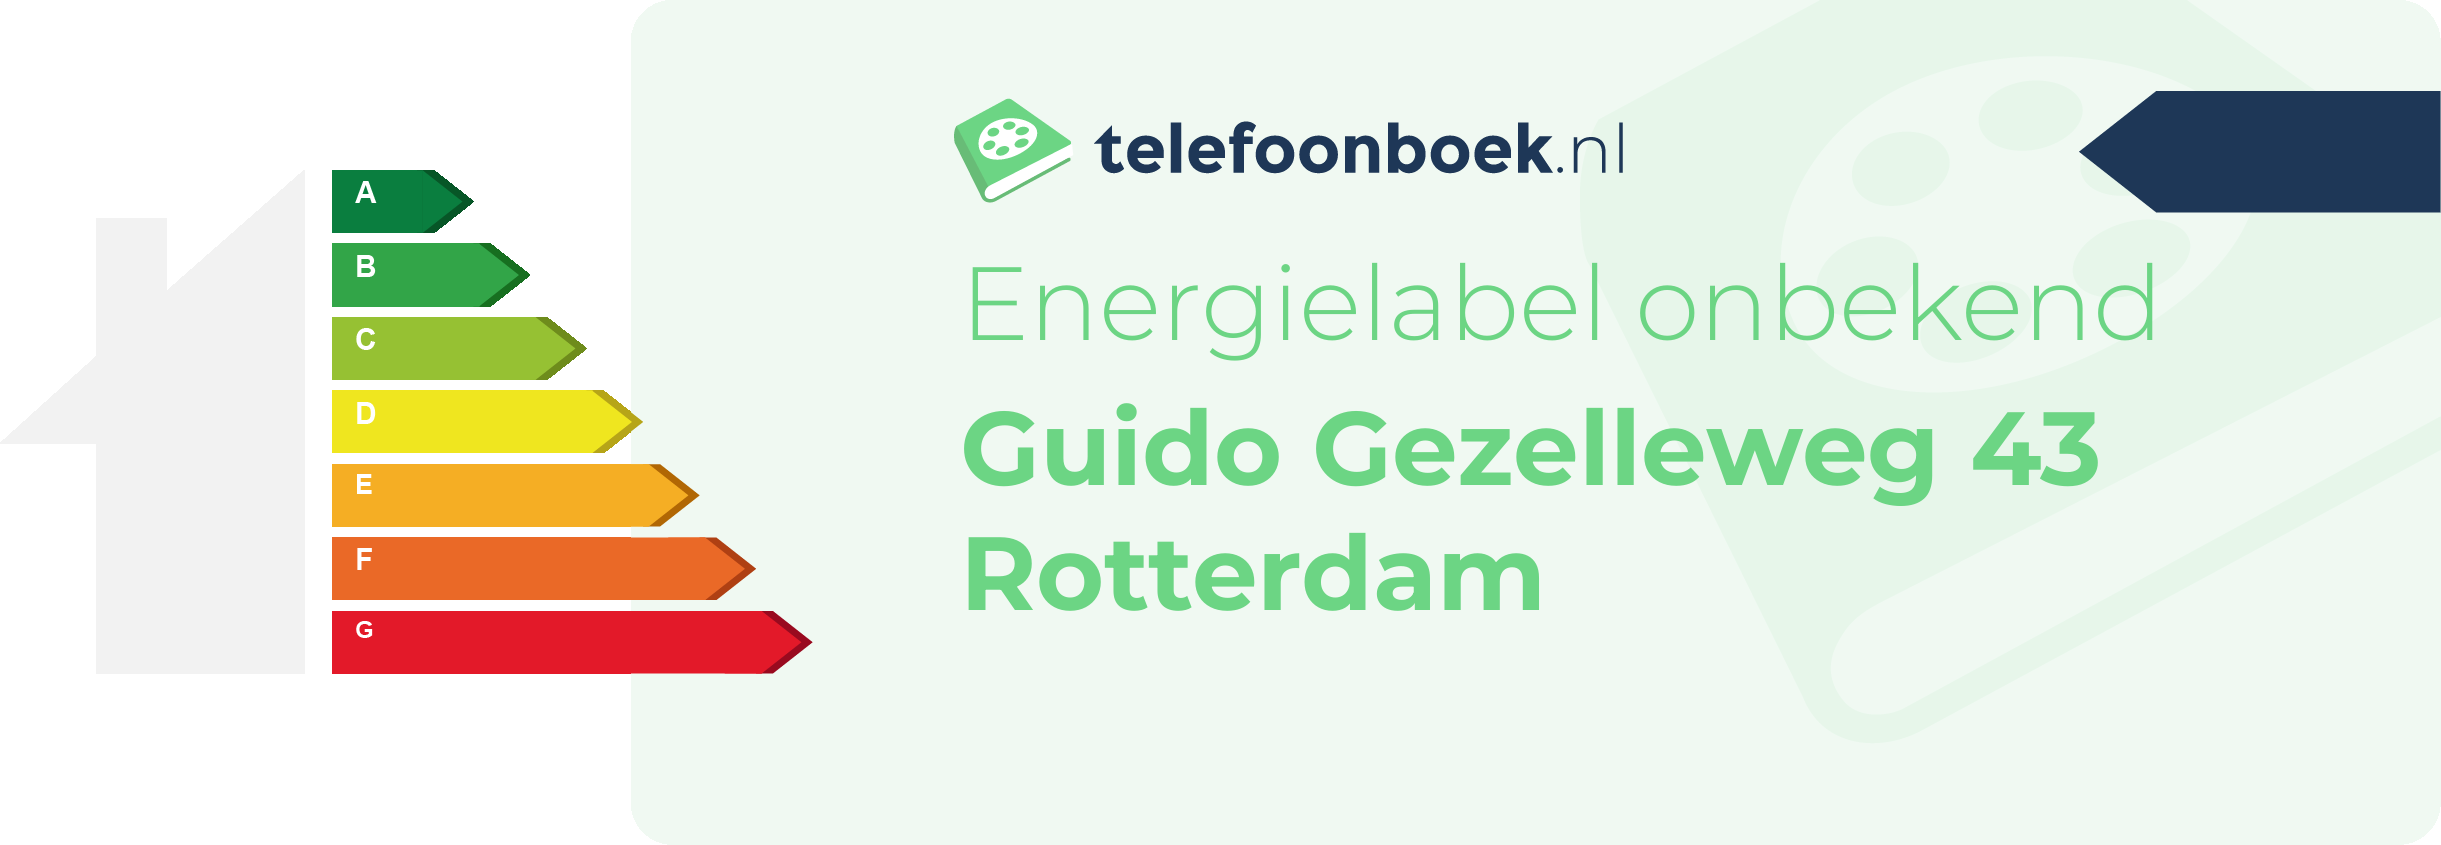 Energielabel Guido Gezelleweg 43 Rotterdam